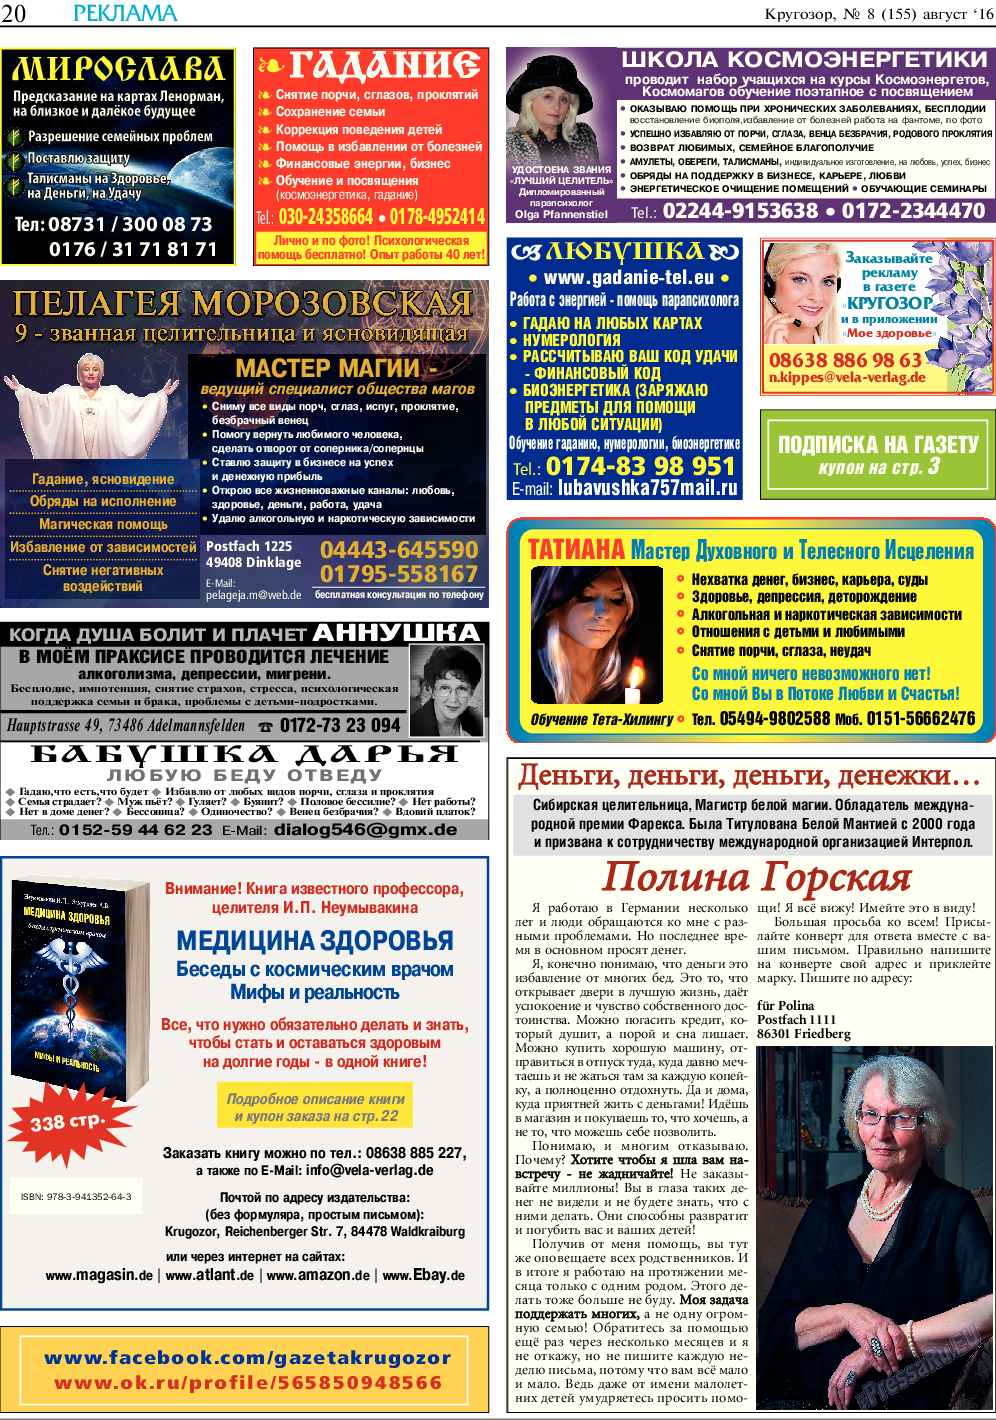 Кругозор, газета. 2016 №8 стр.20